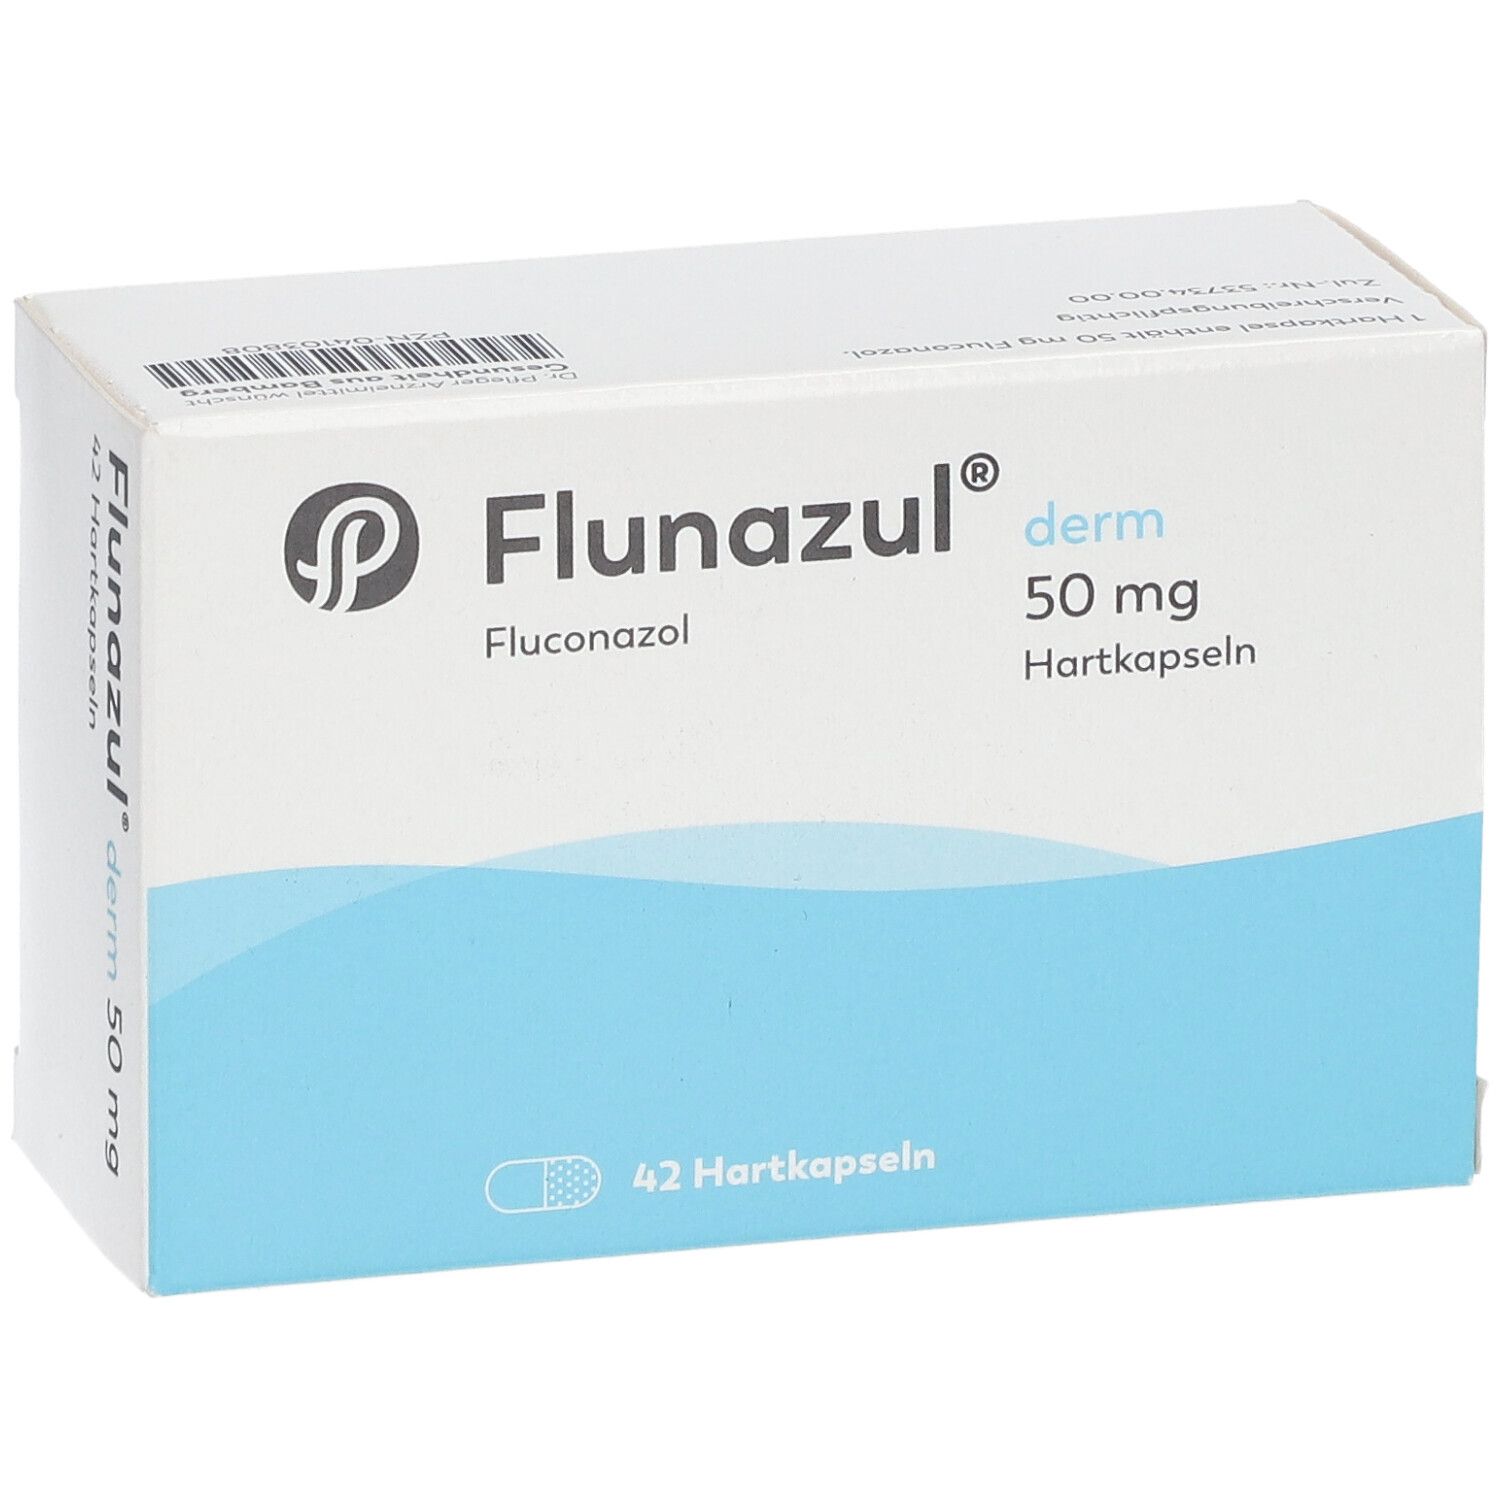 Flunazul® derm 50 mg